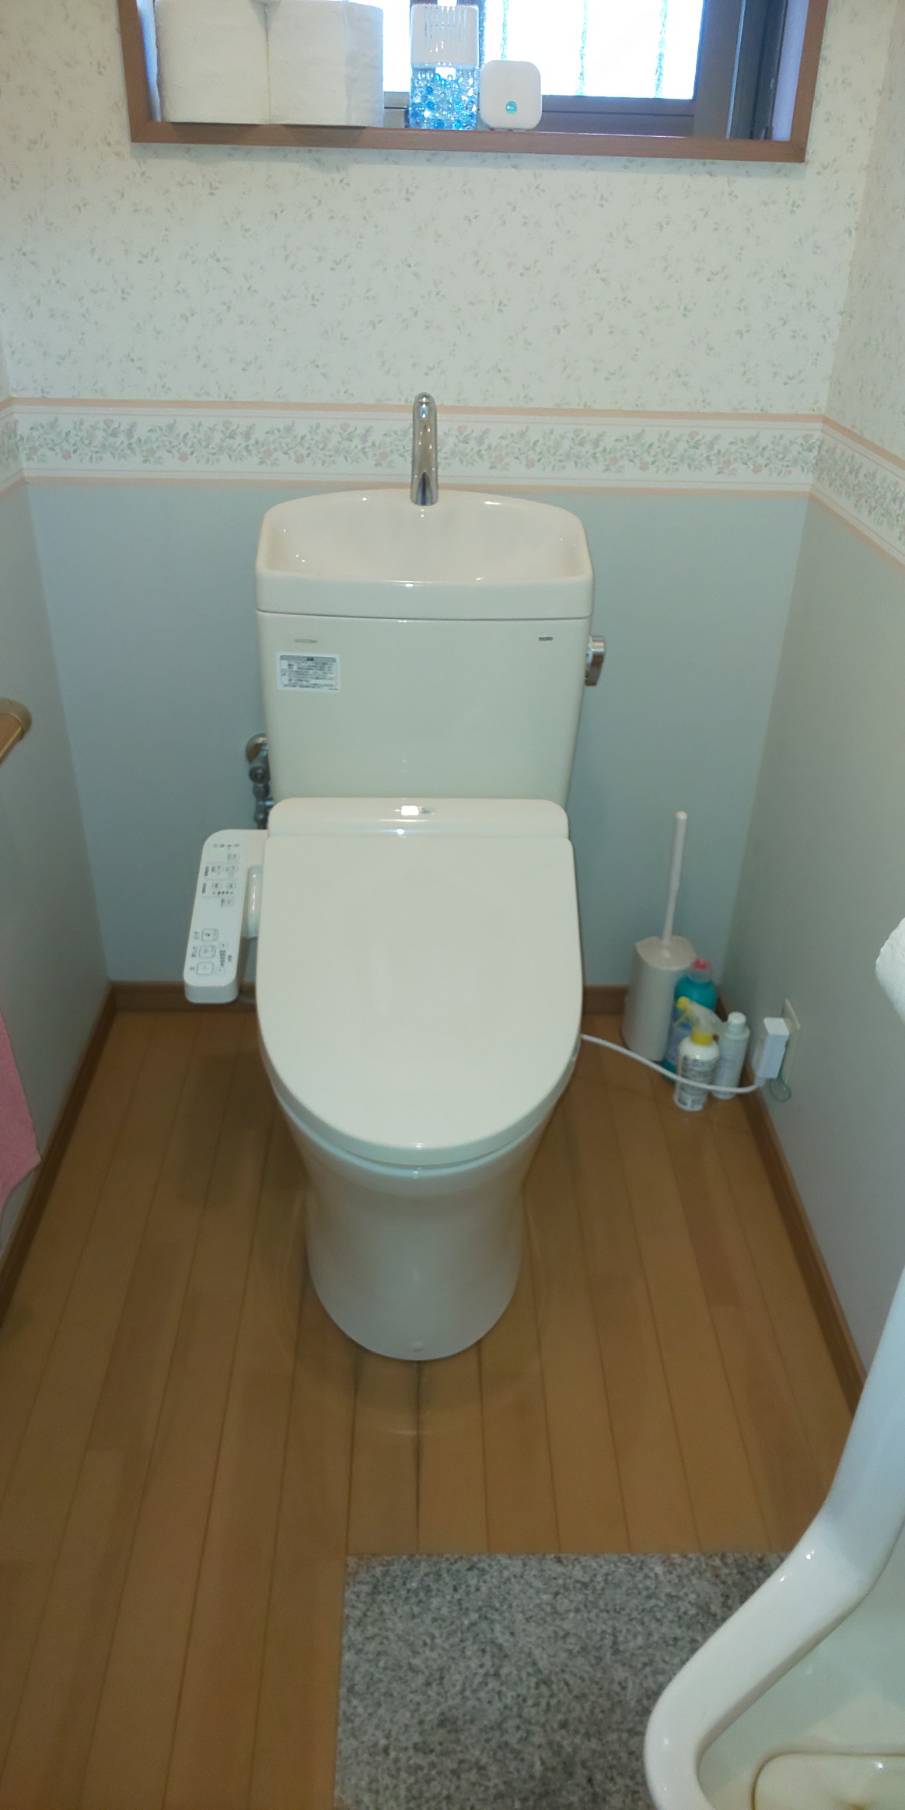 【茨城県稲敷郡阿見町】トイレと床の接地面から水がにじんでいる。トイレ交換。 【公式】水漏れ・つまりを修理するなら